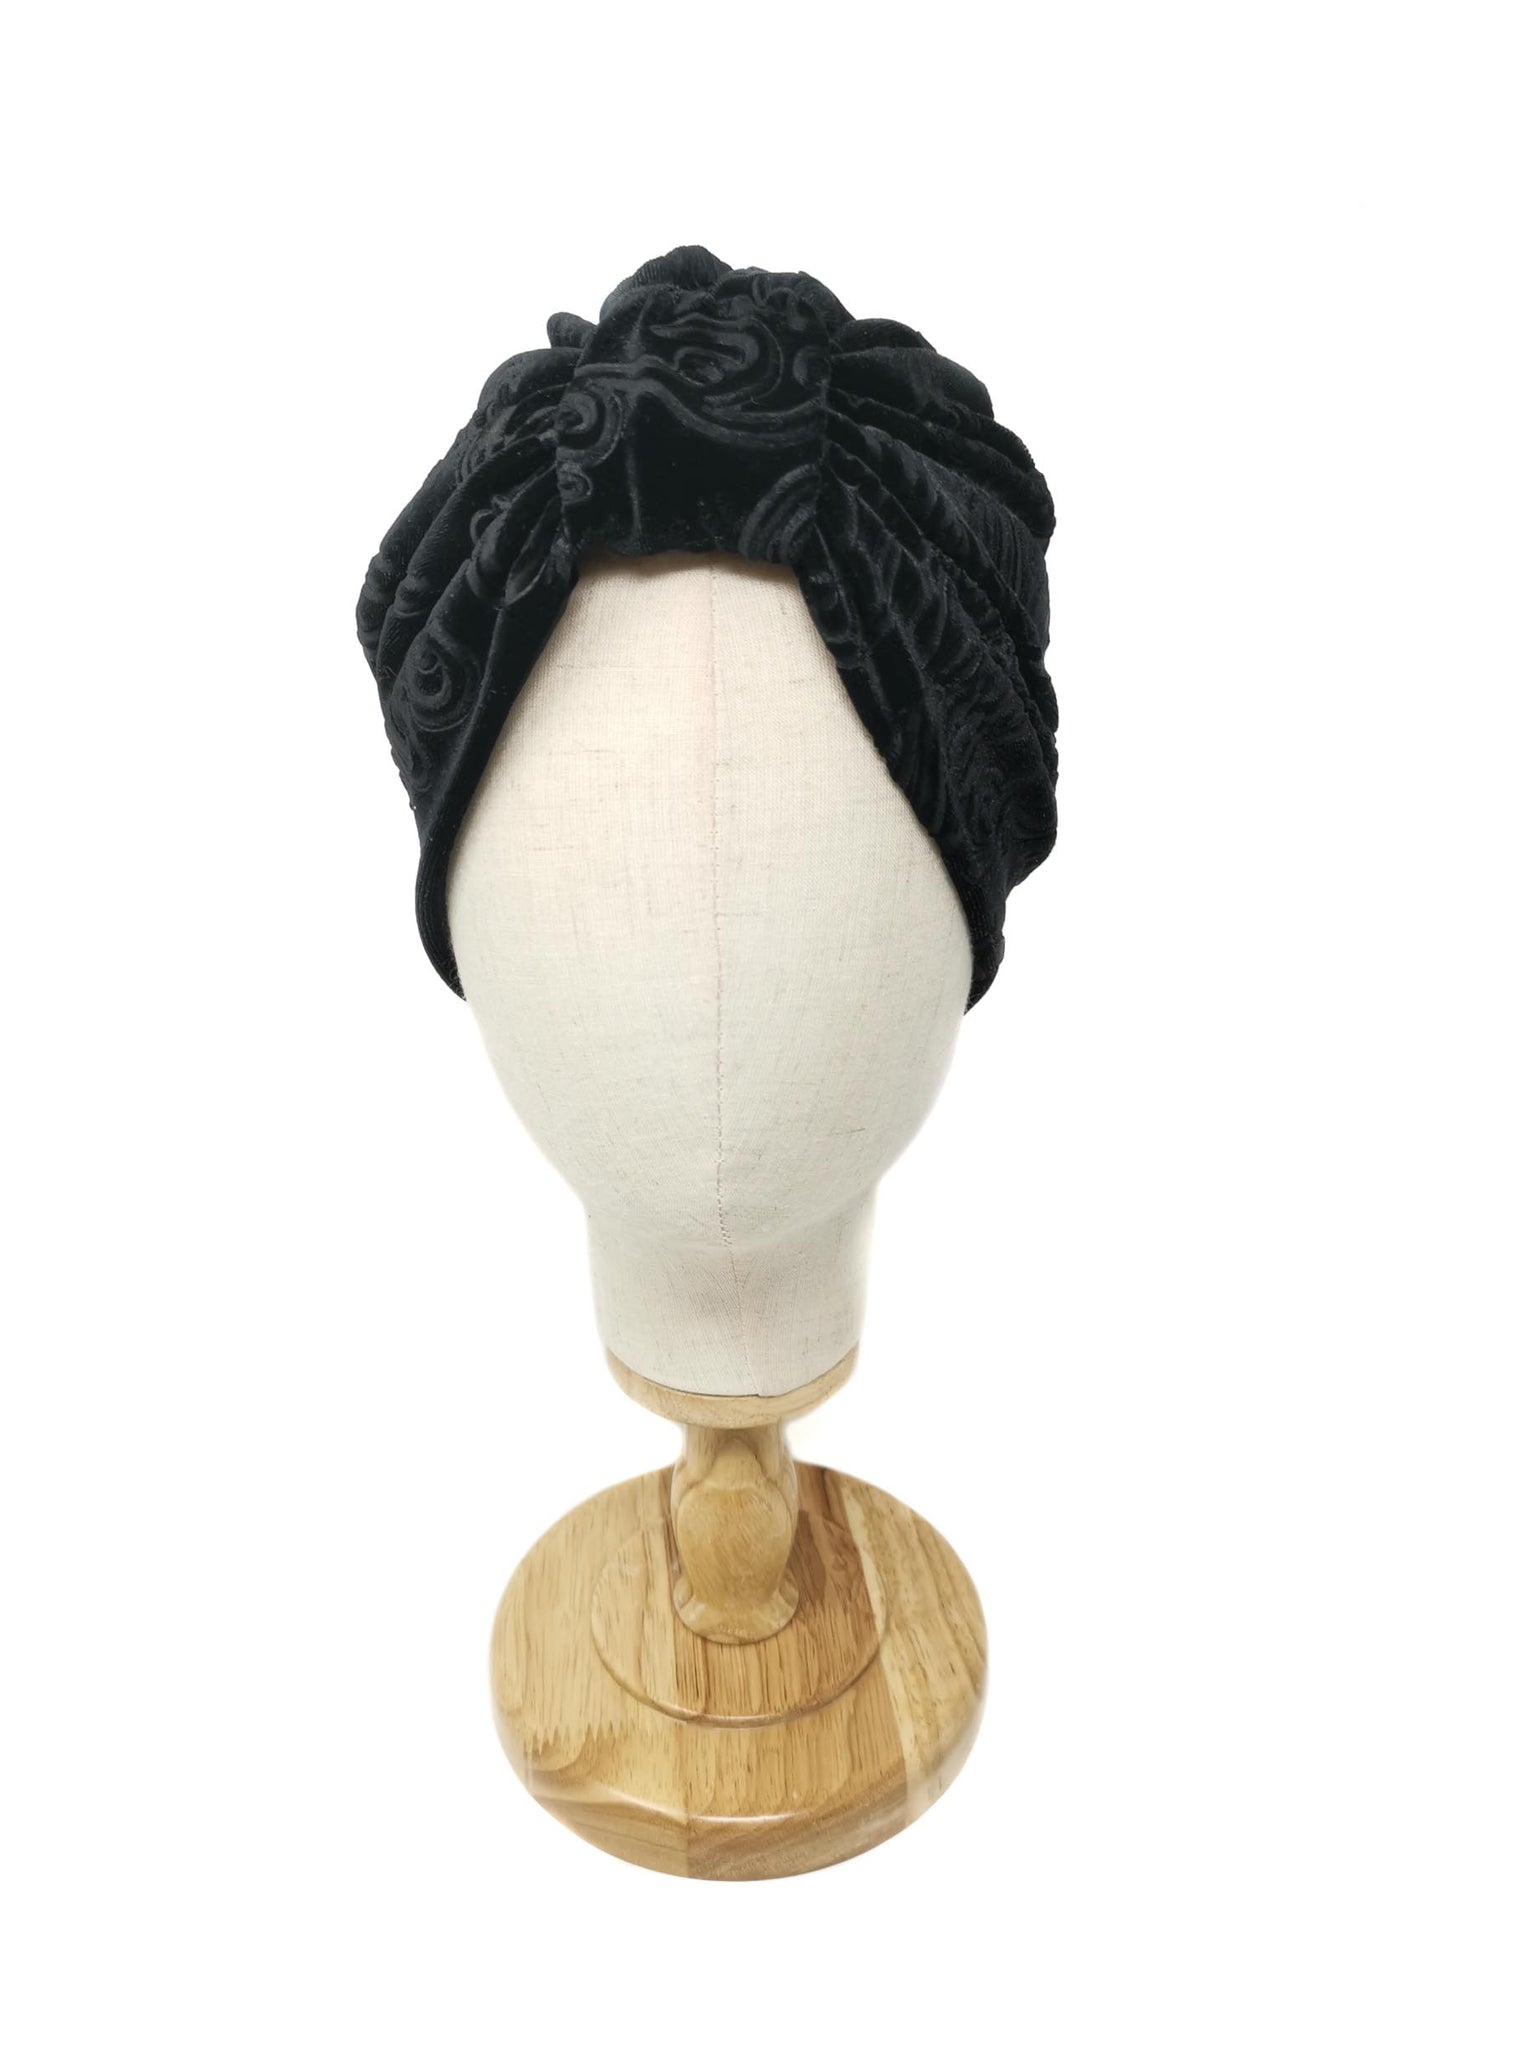 Black velvet devoré "Rose" turban